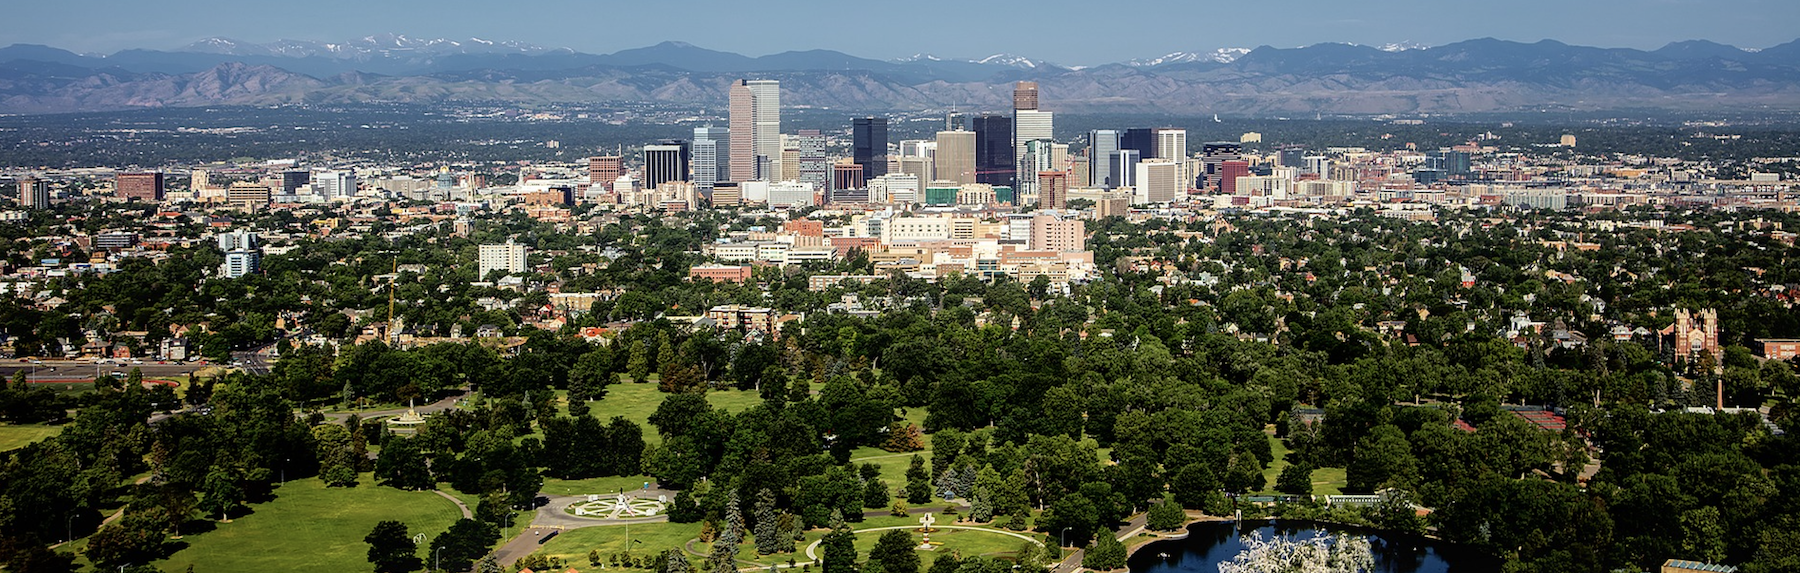 Denver Colorado Skyline - Reliable Glazing website